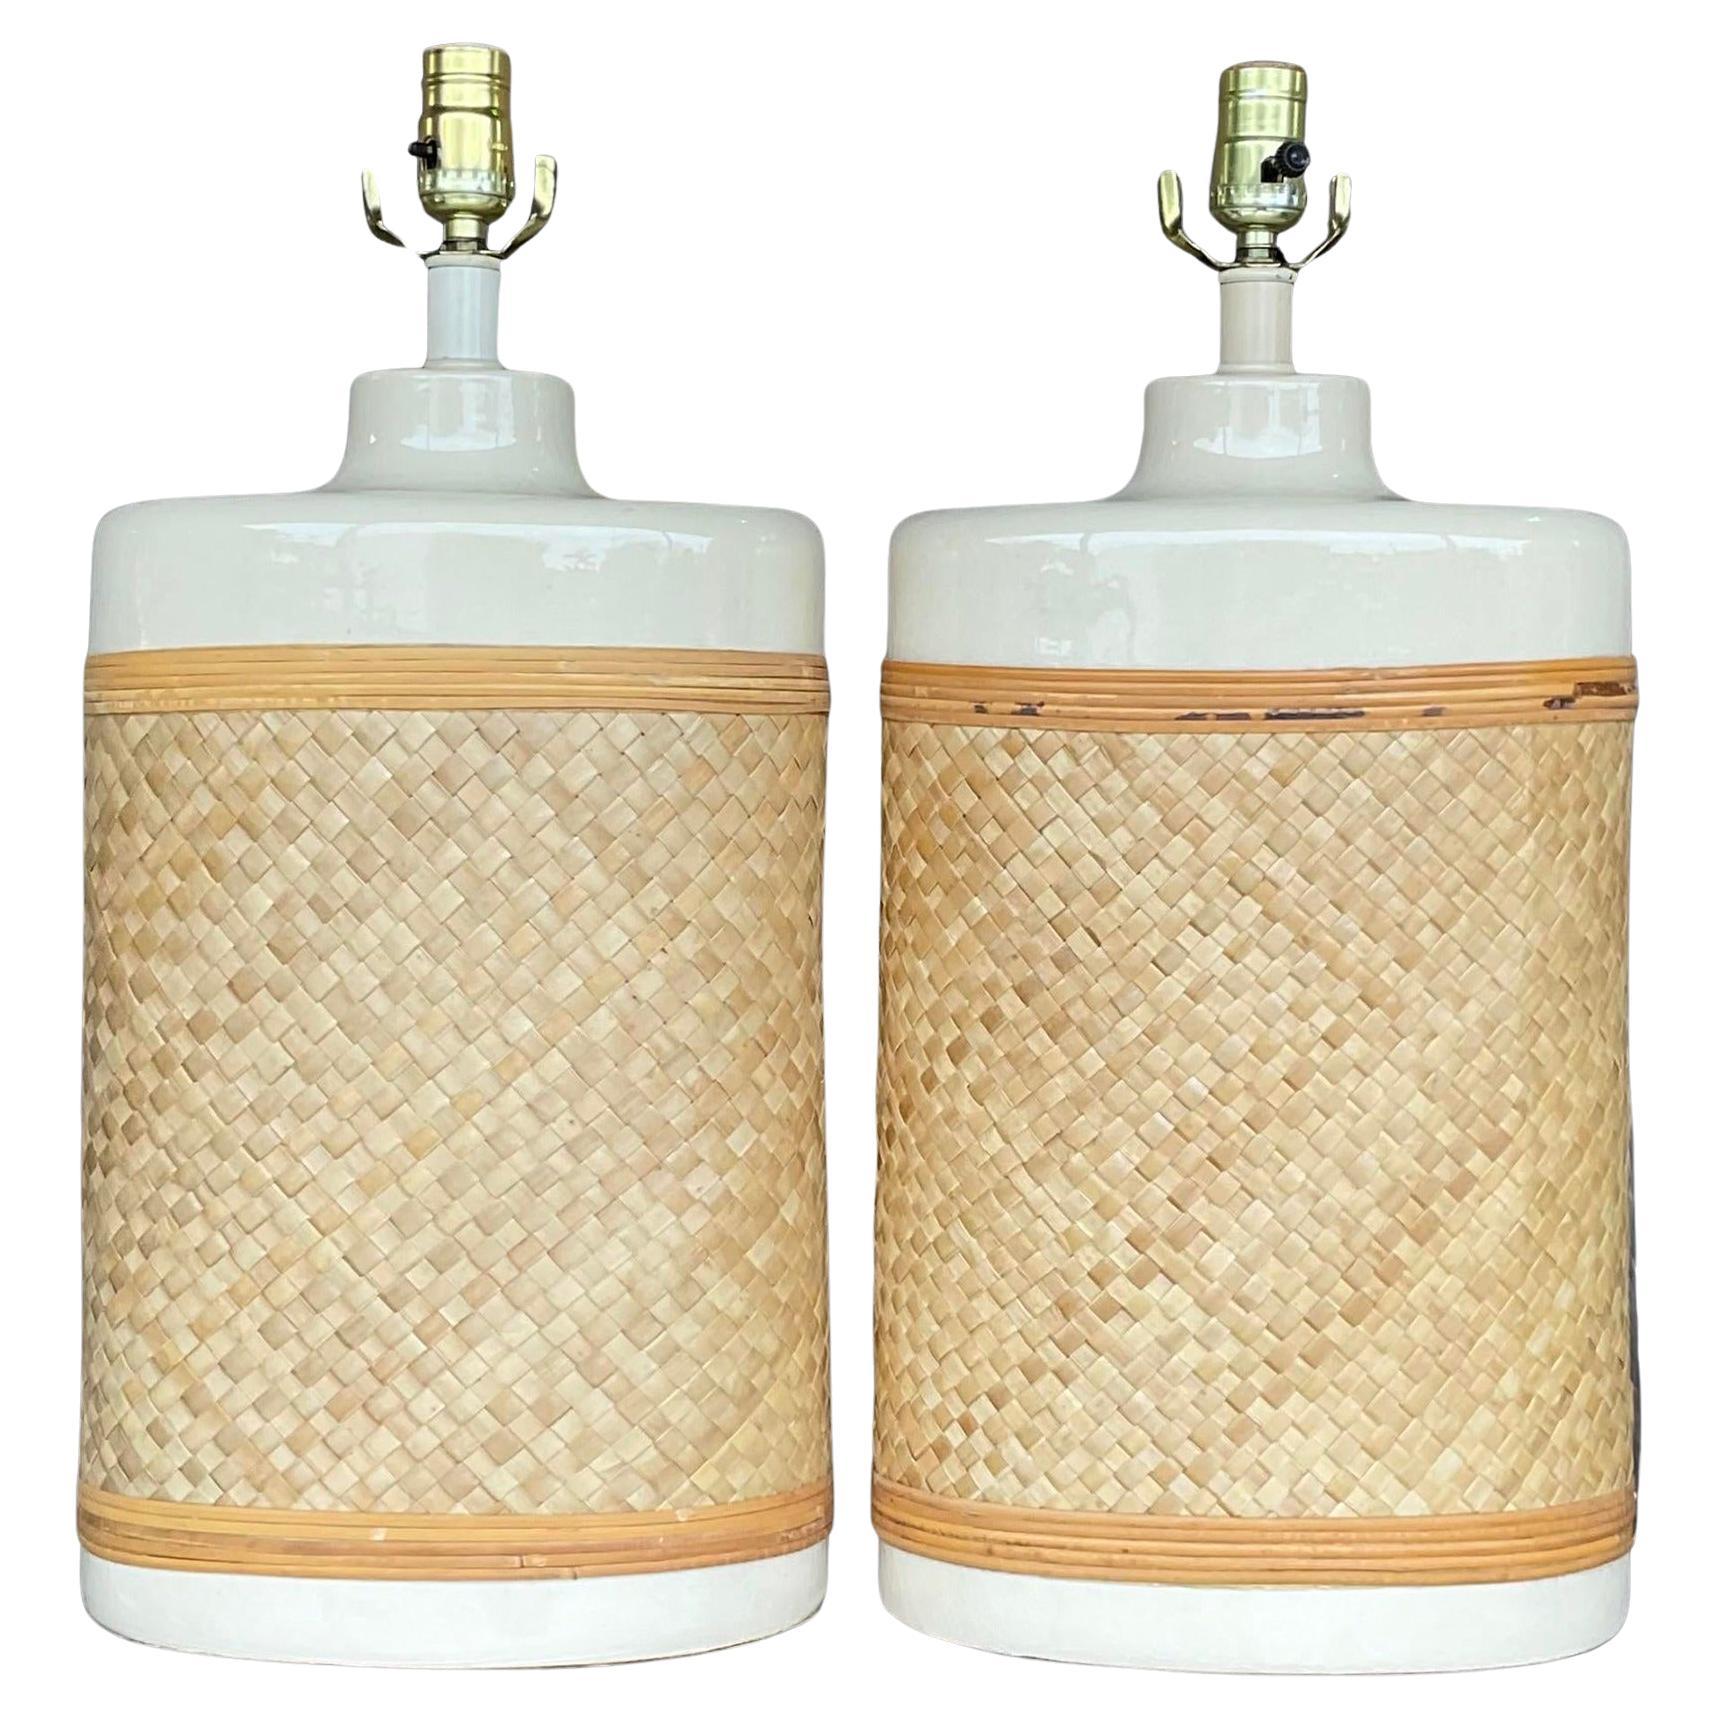 Coastal-Lampen aus gewebtem Rattan im Vintage-Stil – ein Paar